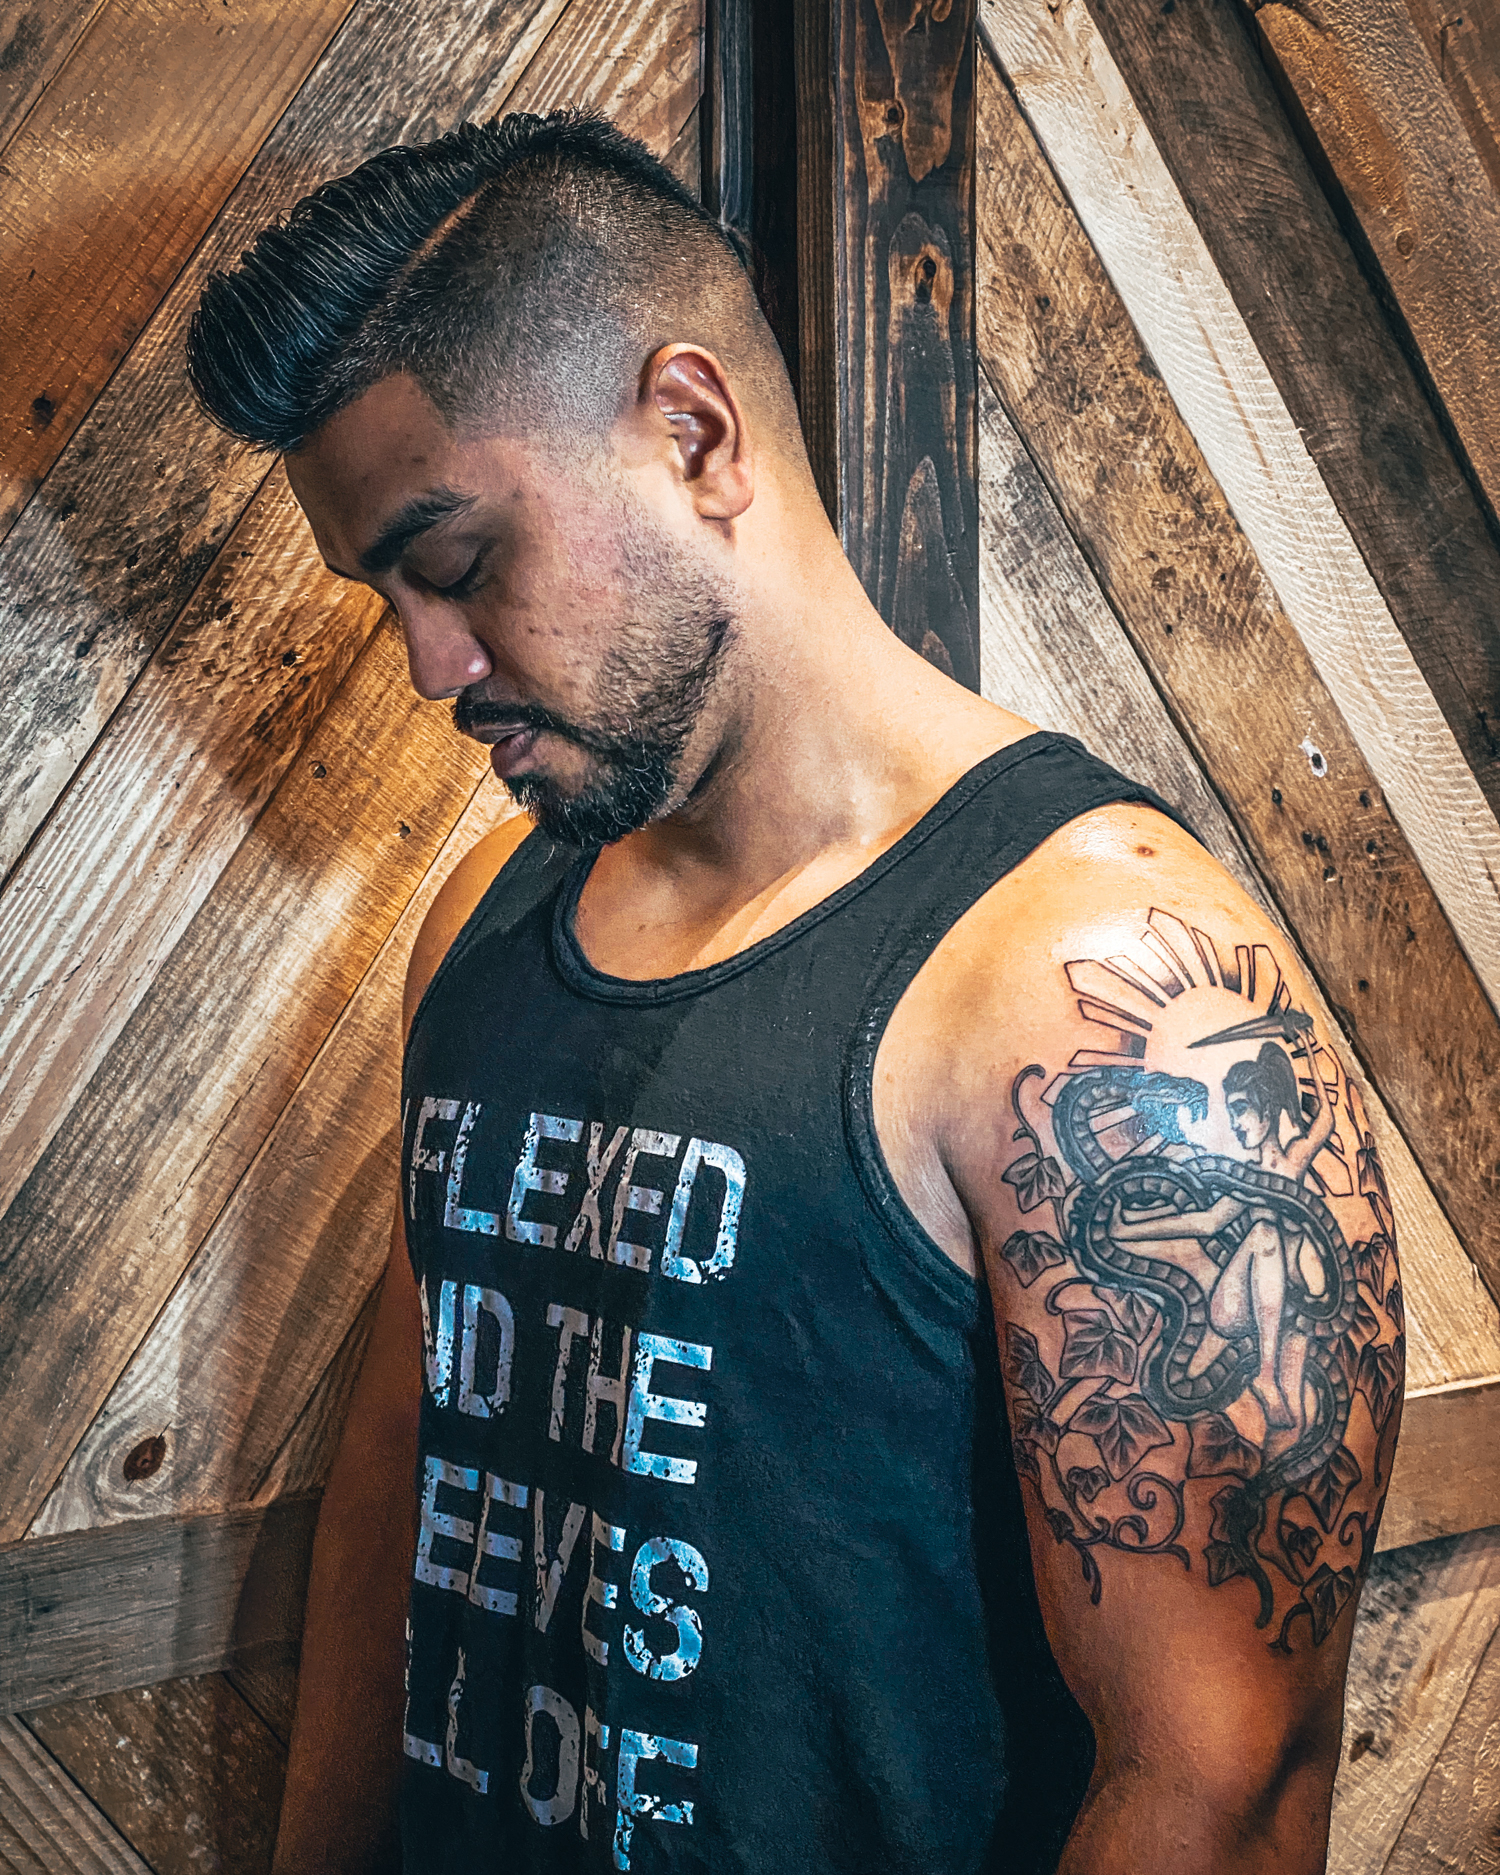 Jon Mall’ new tattoo